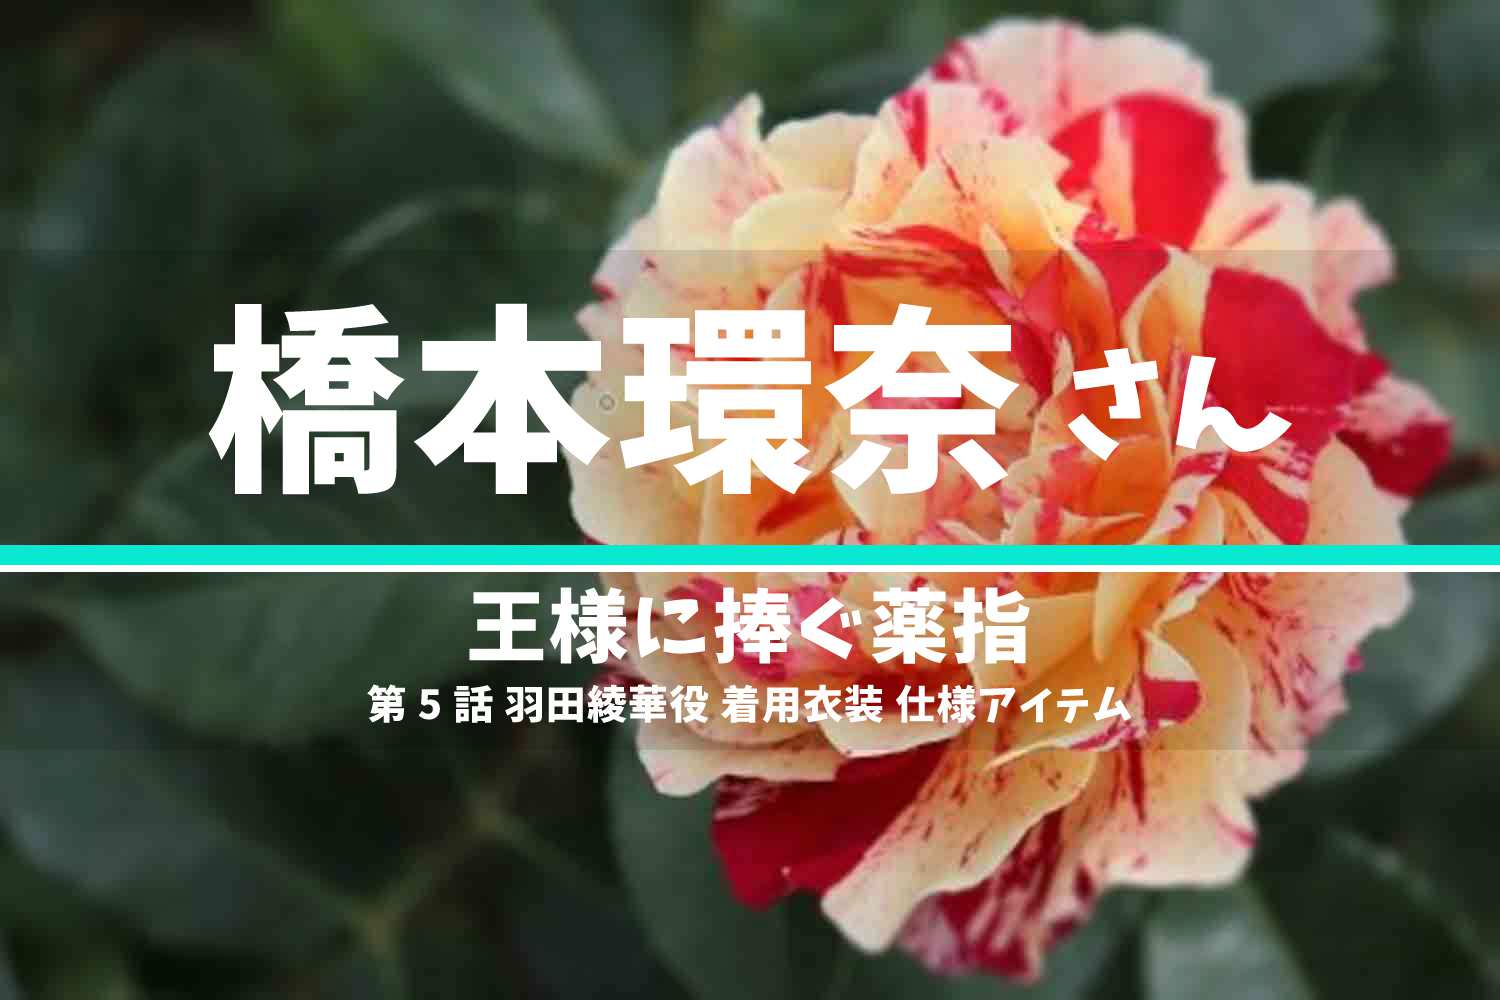 王様に捧ぐ薬指 橋本環奈さん テレビドラマ 衣装 2023年5月16日放送